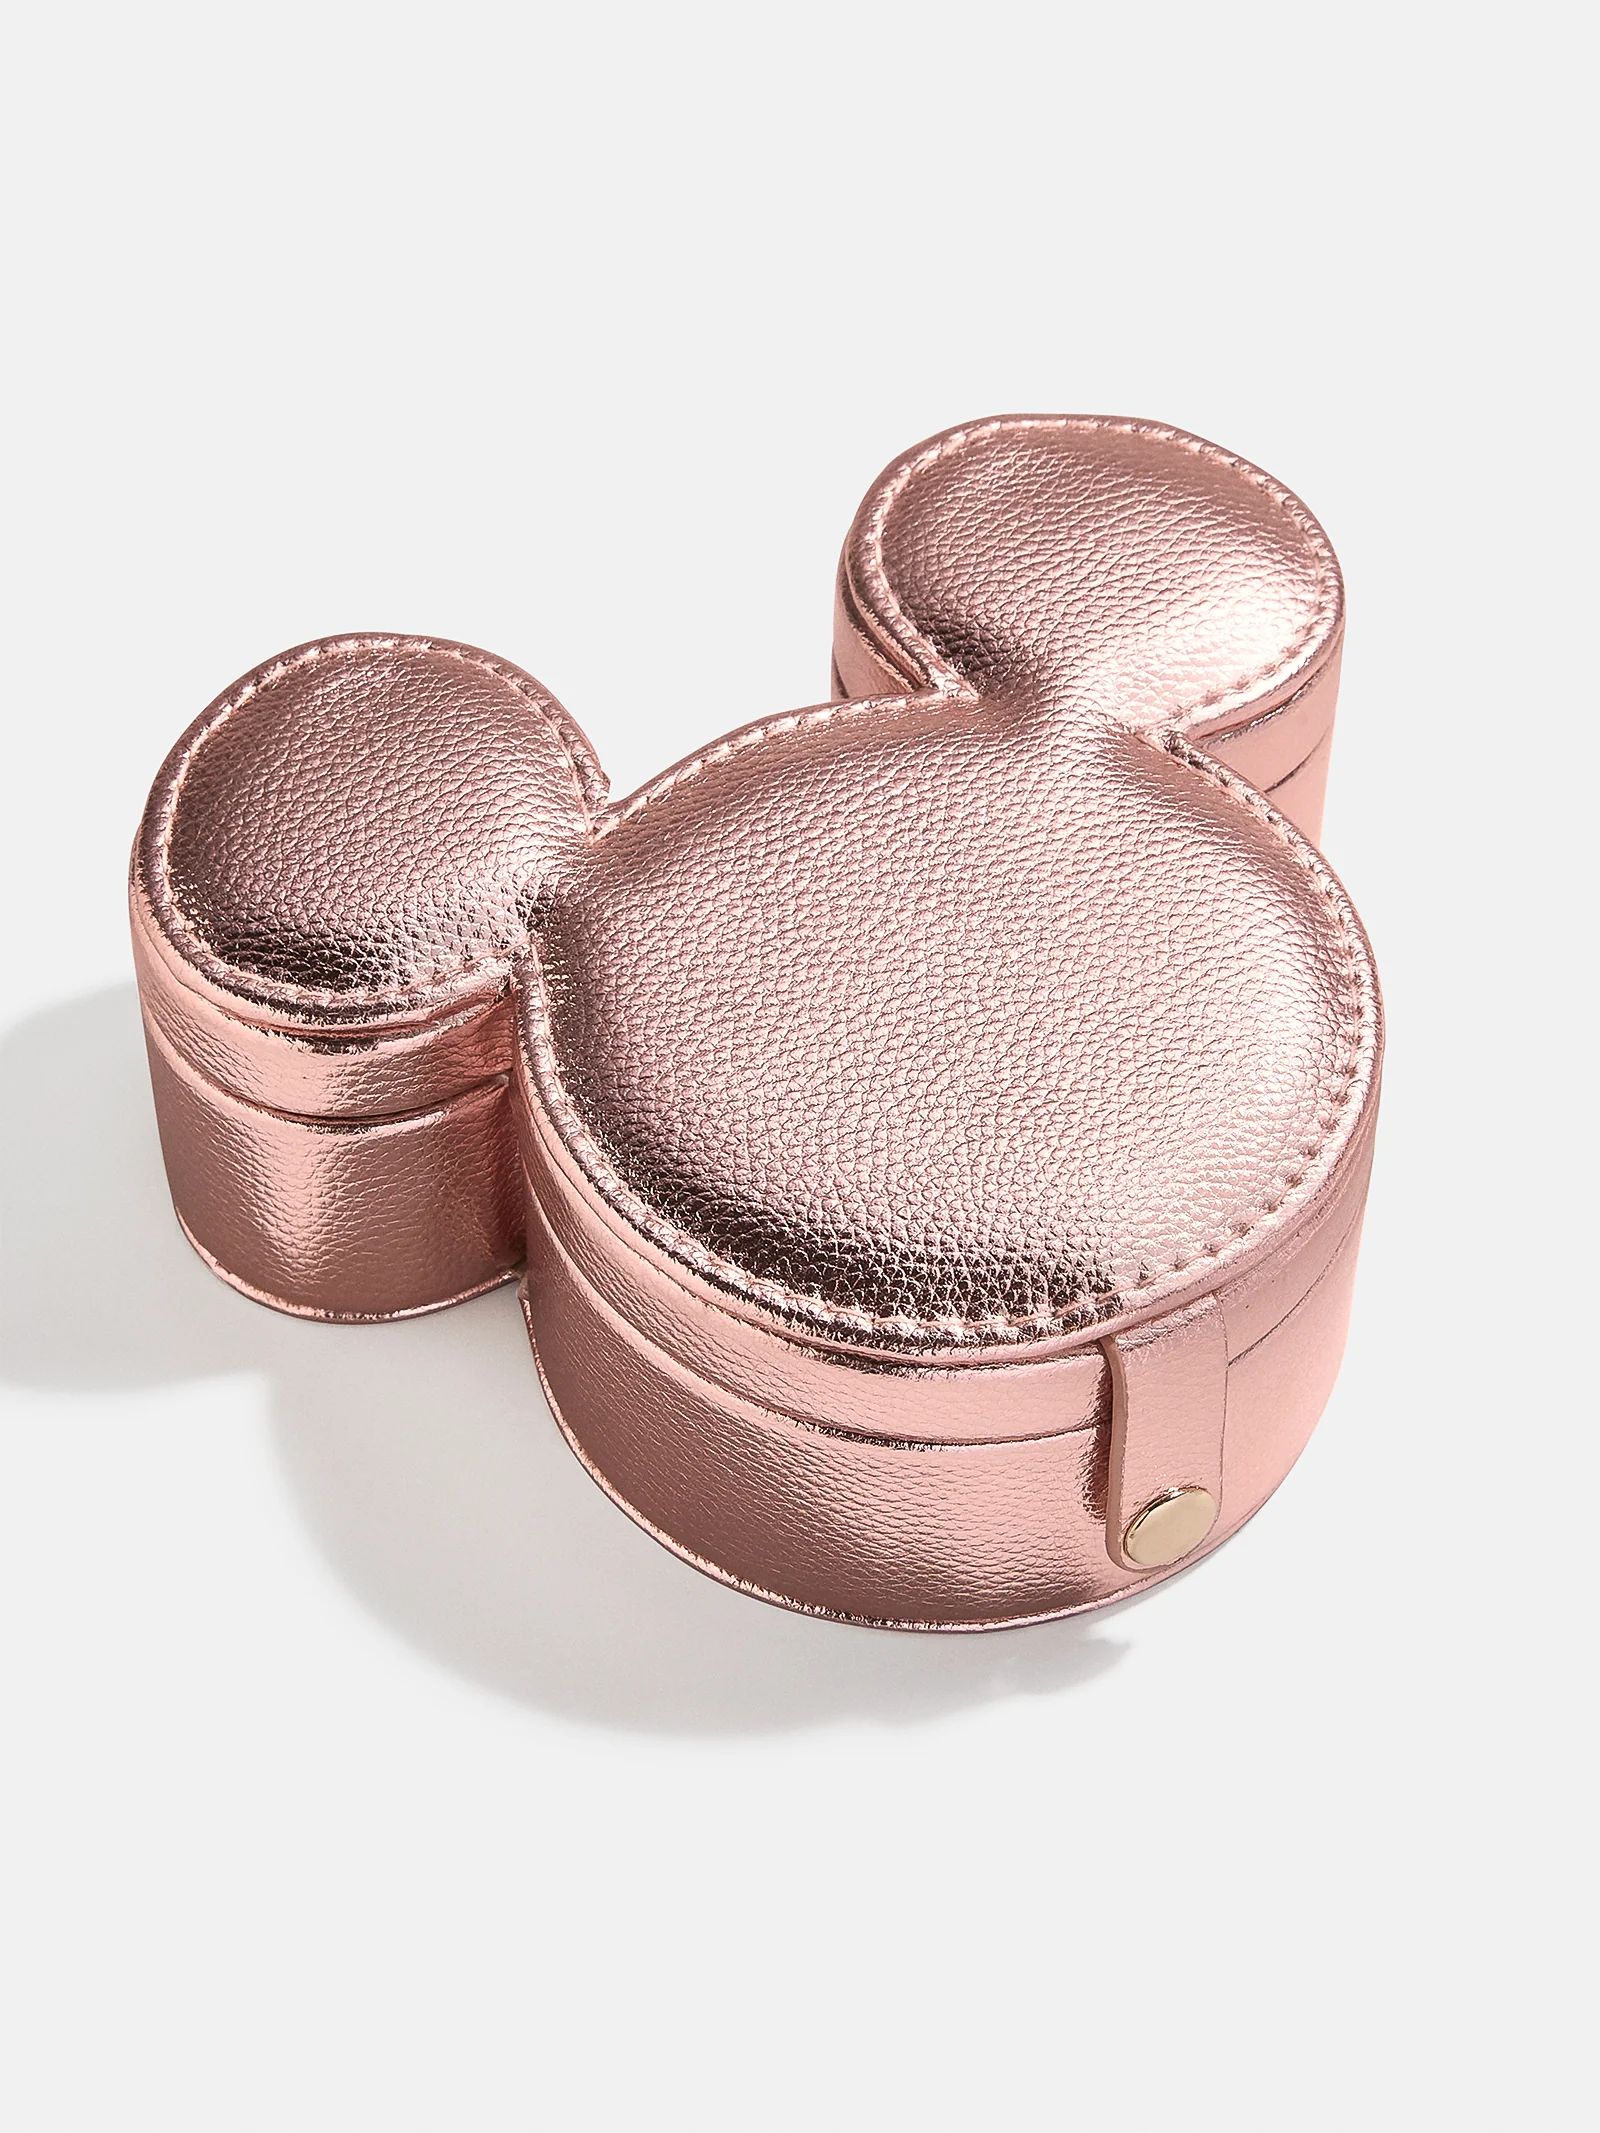 Mickey Mouse Disney Metallic Storage Case - Metallic Pink | BaubleBar (US)